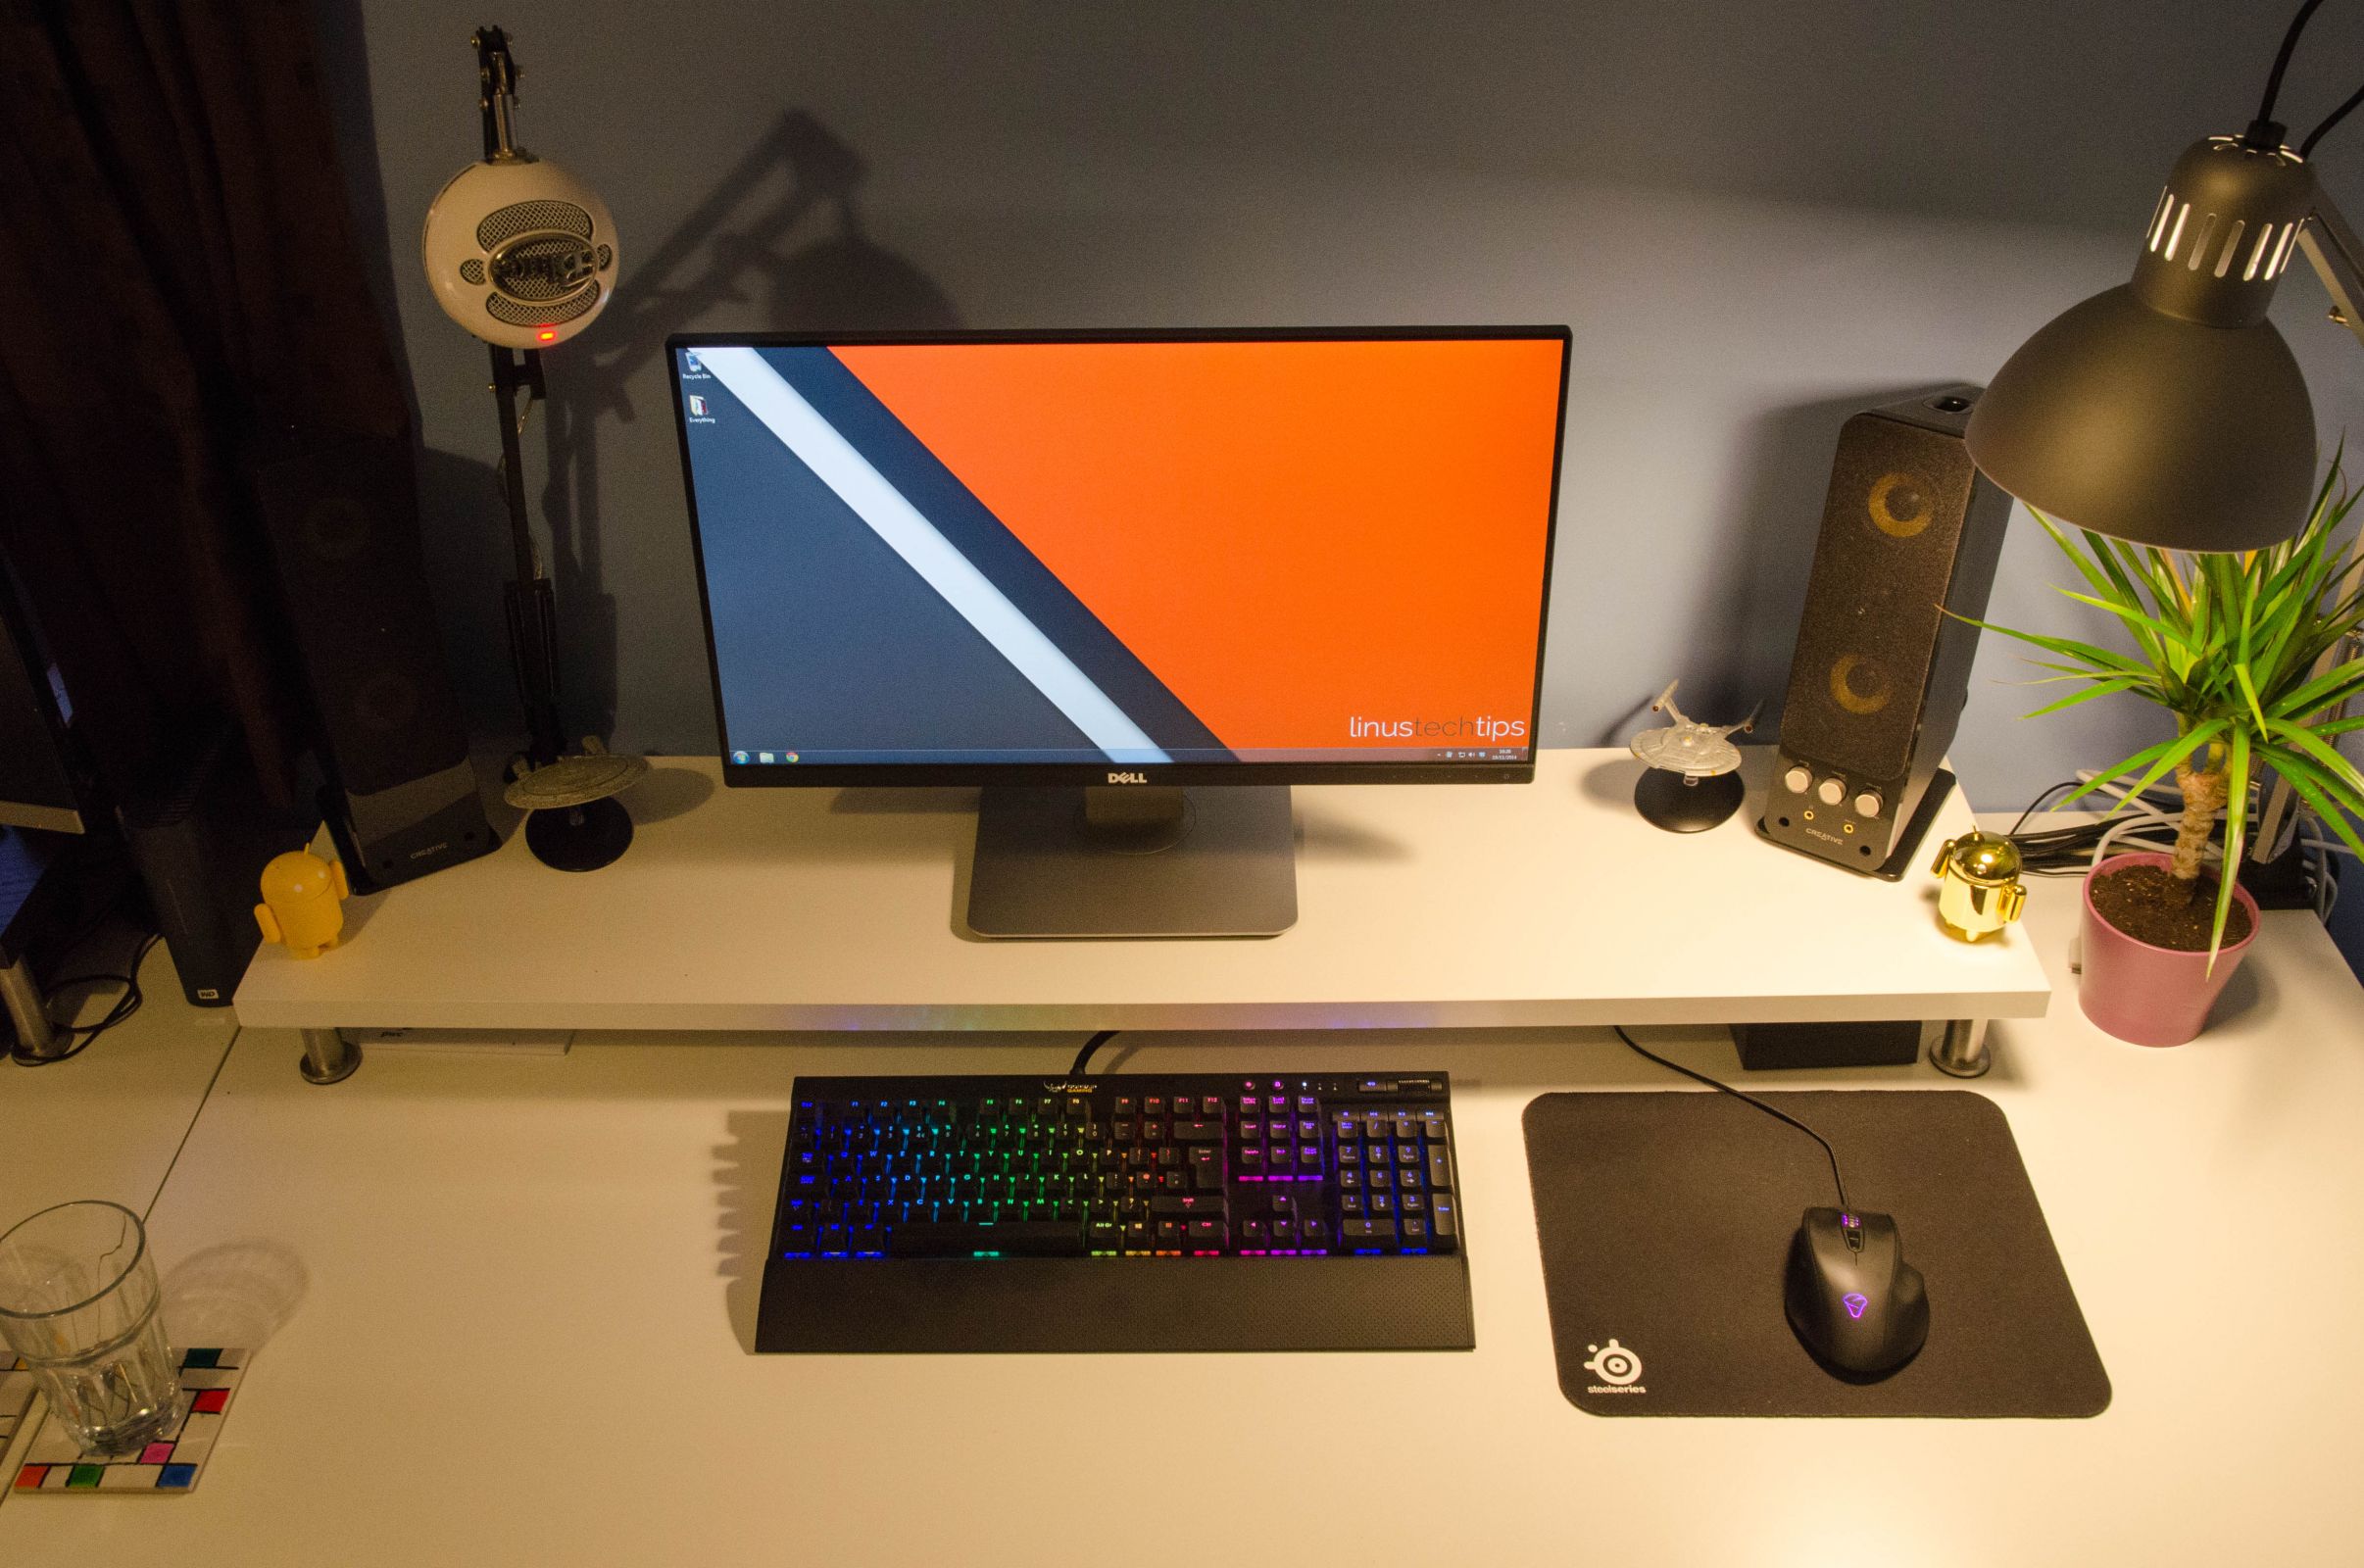 Desk Setup